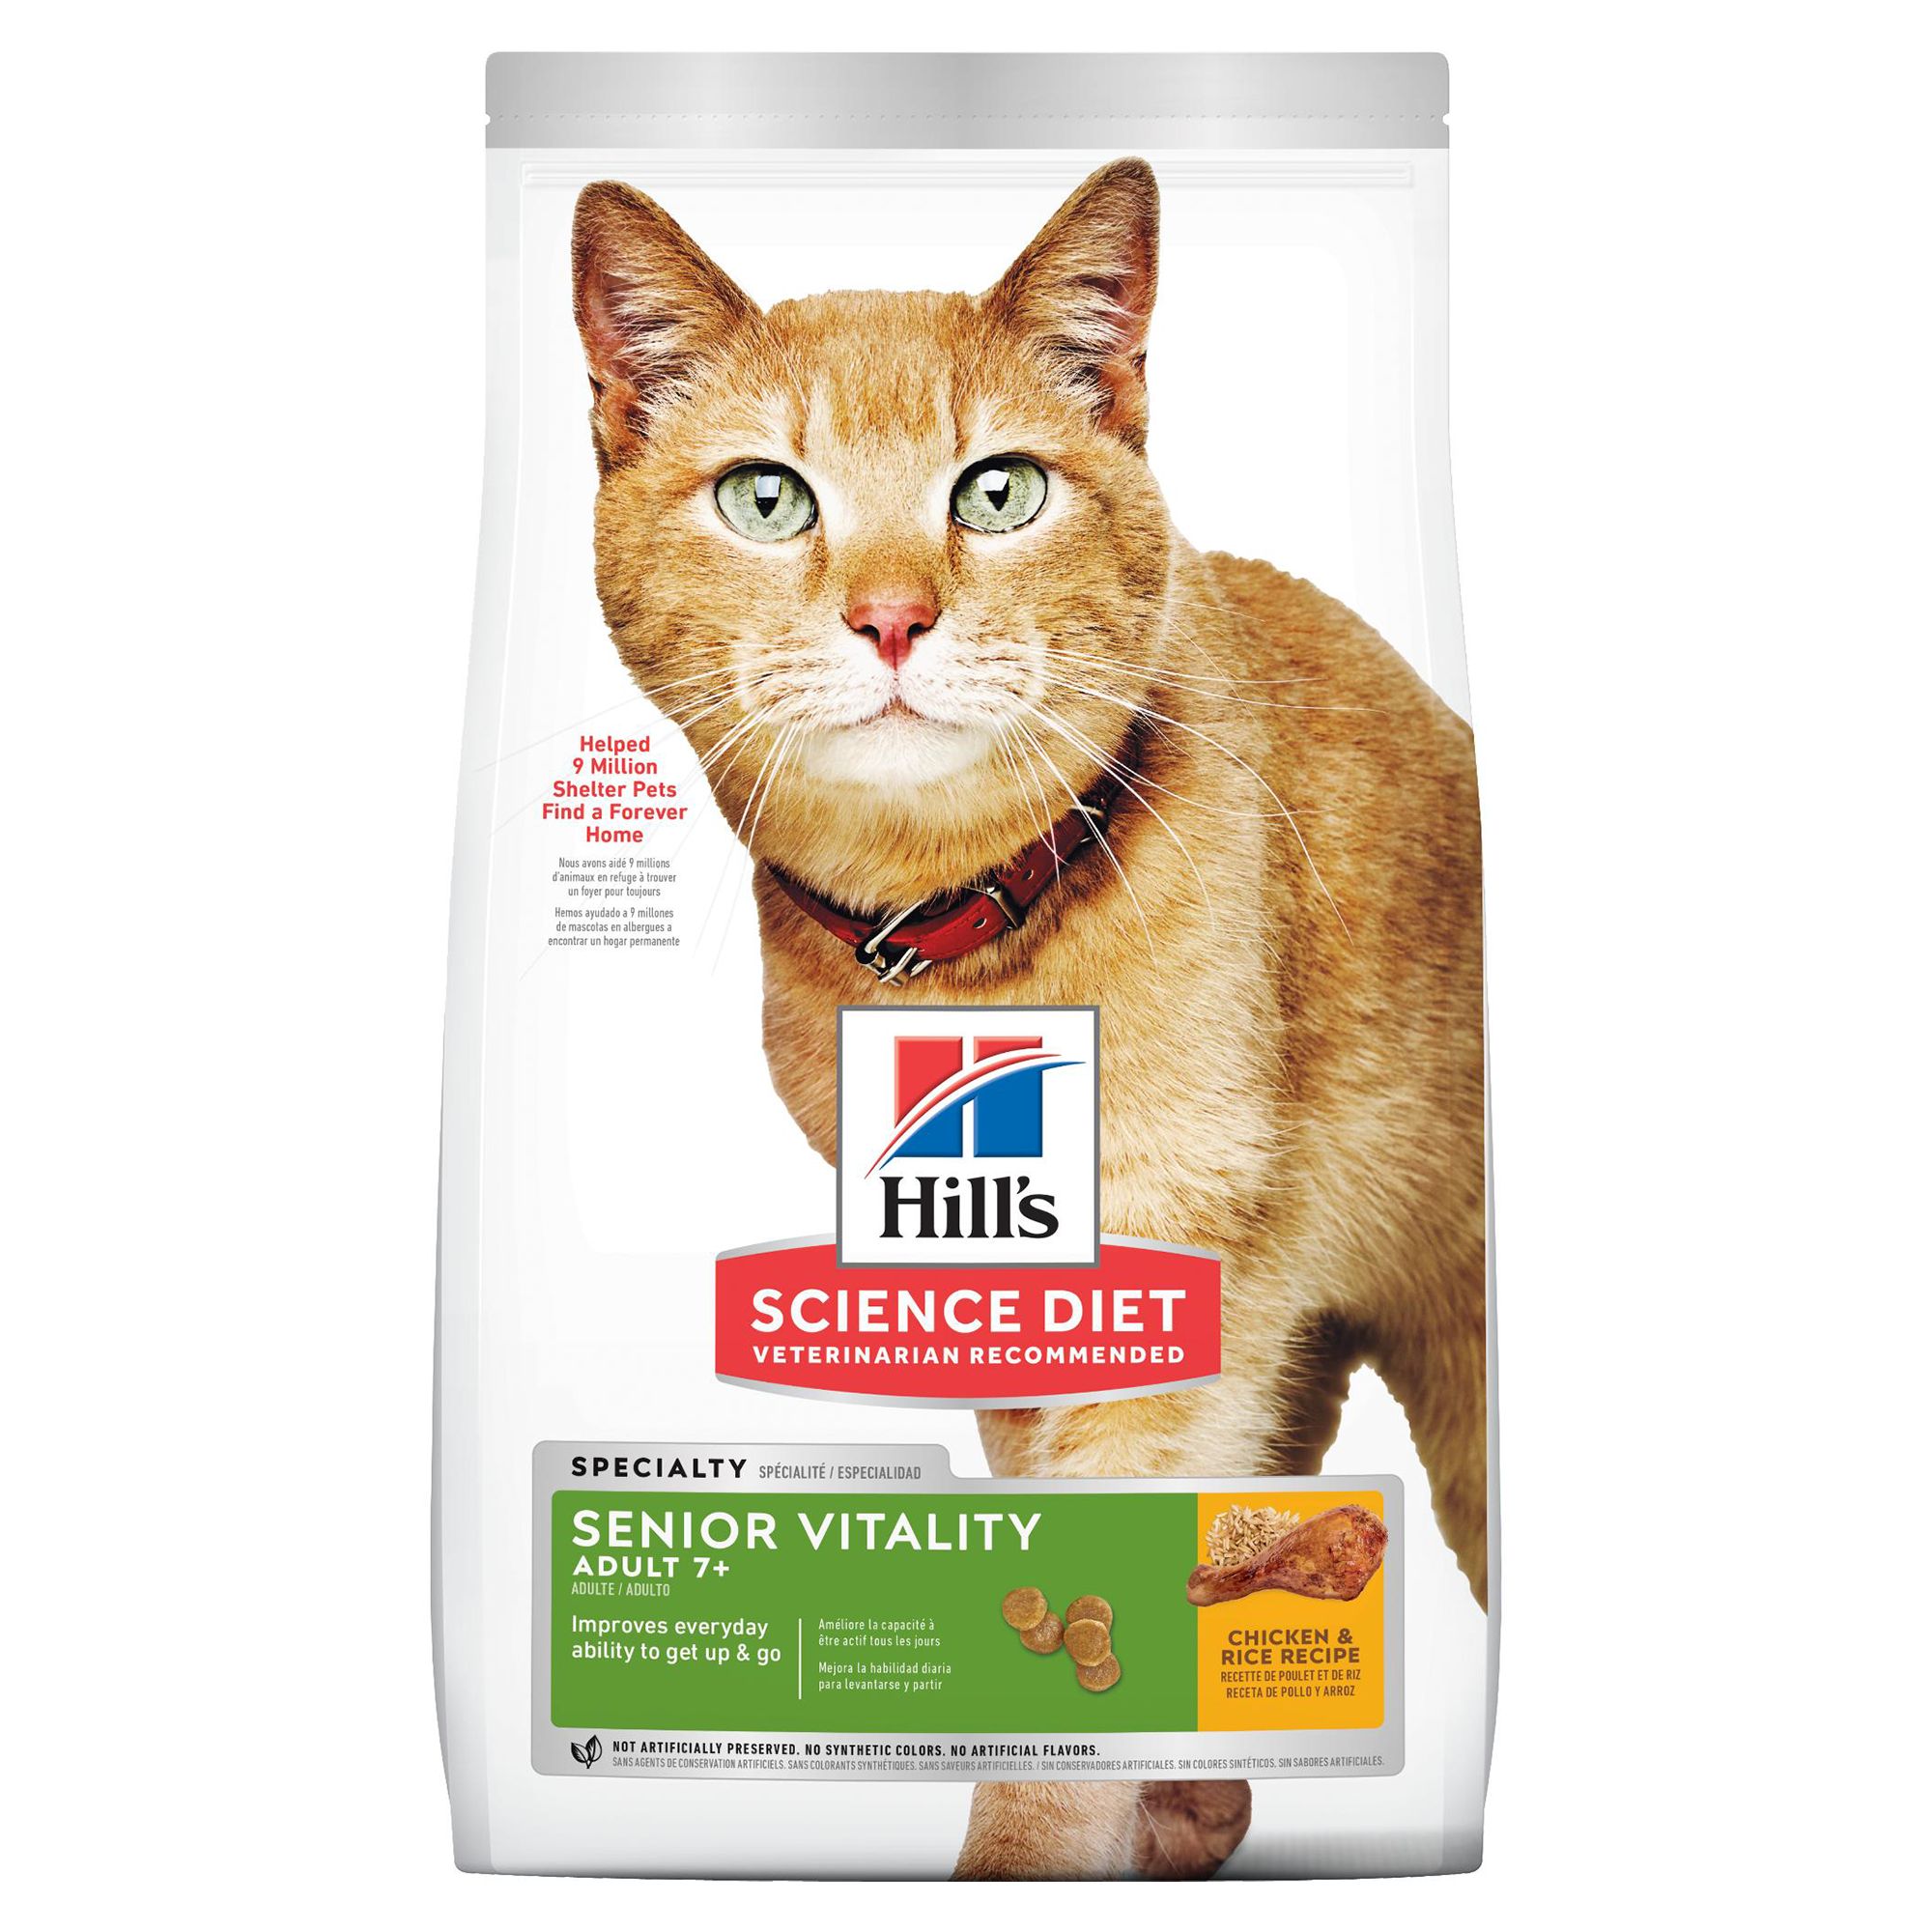 Hills Cat Food, On Sale